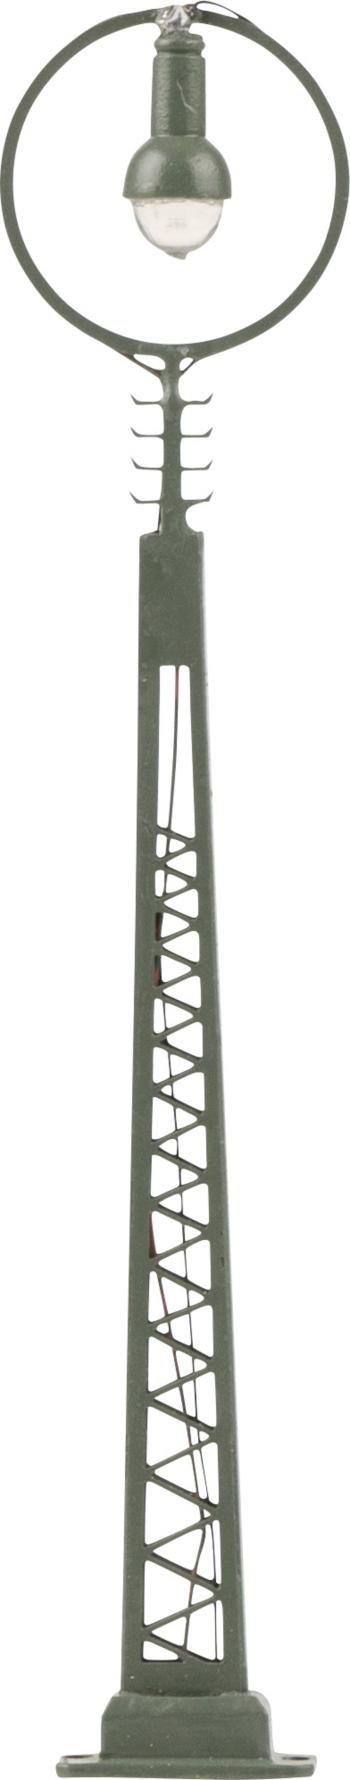 Faller N lampa na priehradovom stožiaru jednoduché hotový model 272225 1 ks